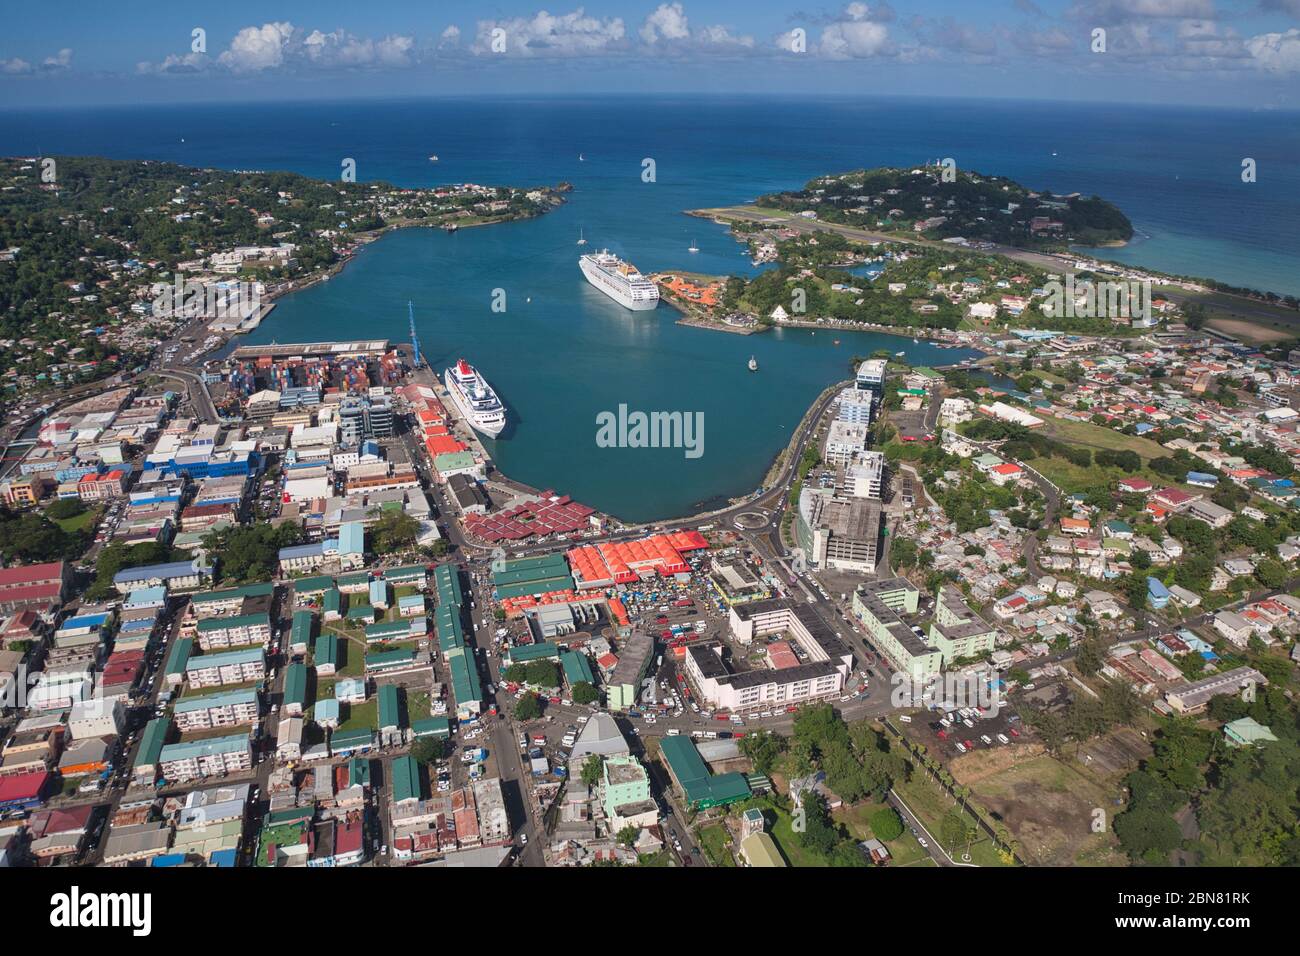 Vue aérienne depuis l'hélicoptère de Castries, le port principal et capitale de l'île Sainte-Lucie dans les Caraïbes, Antilles. Le petit aéroport est en haut à droite Banque D'Images